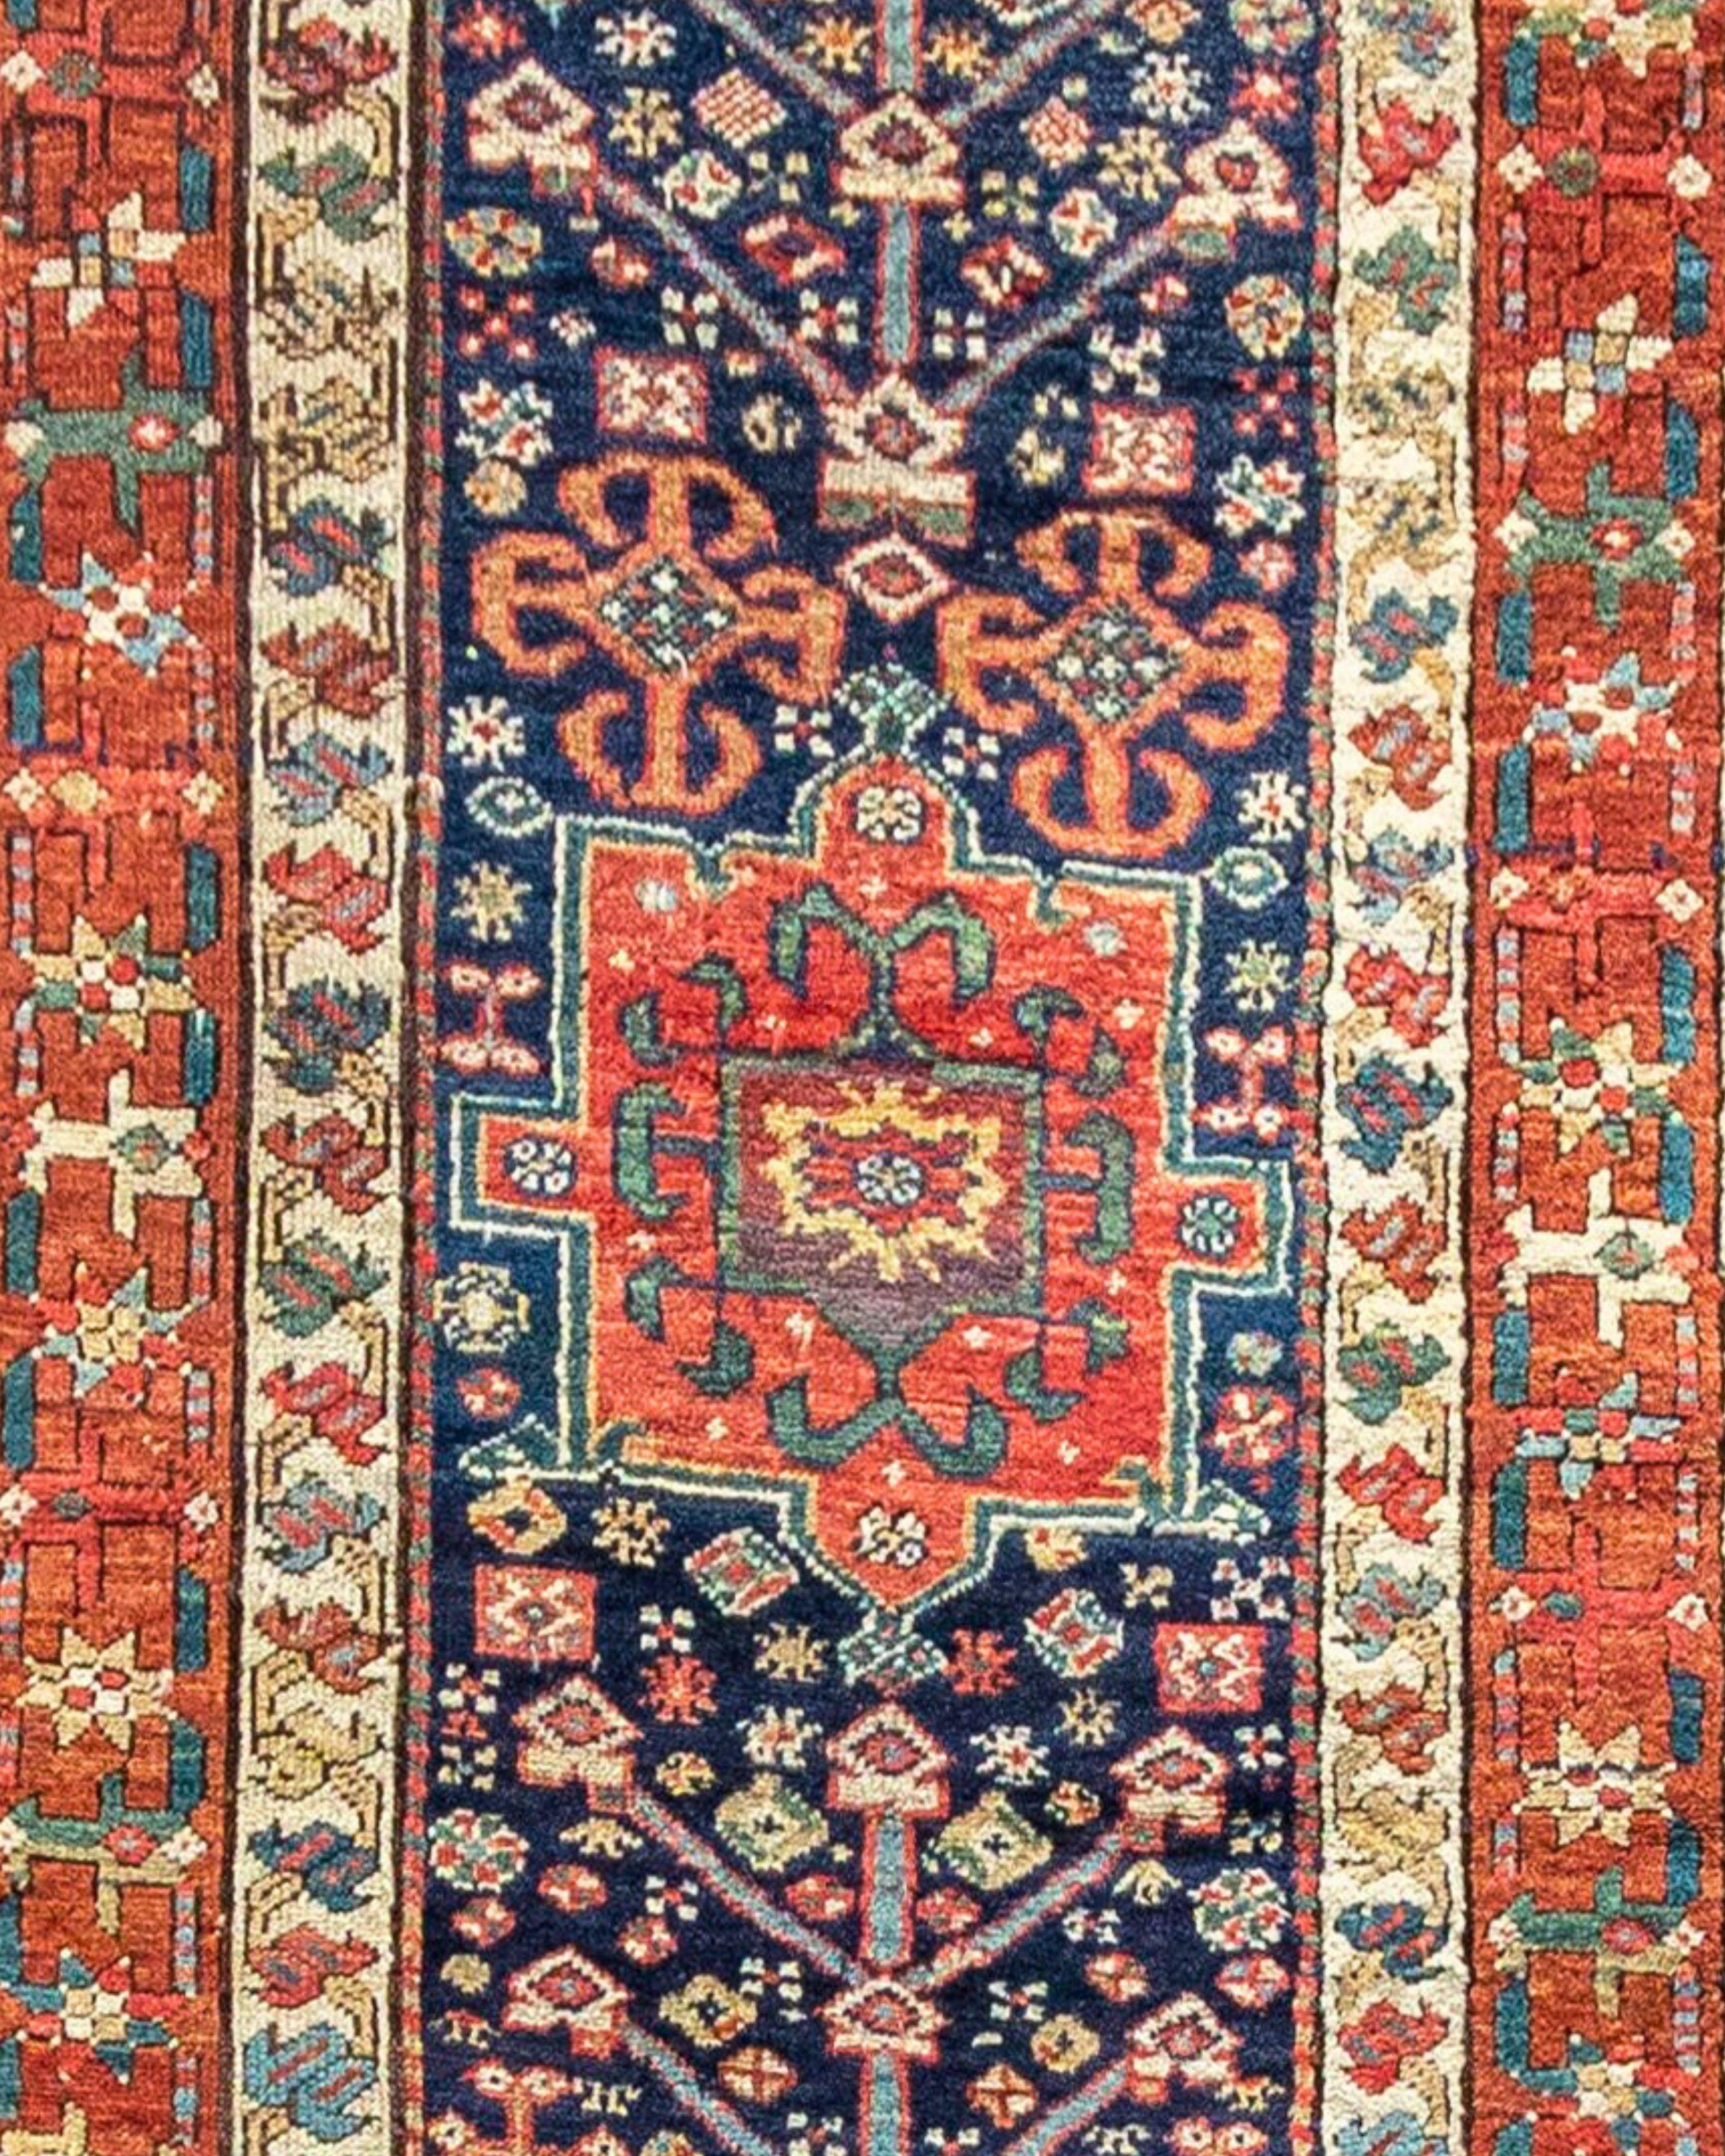 Ancien tapis persan Karadagh, 19e siècle

Bon état avec quelques petites zones nécessitant un renouage. Vendu en l'état, devis de réparation sur demande.

Informations supplémentaires :
Dimensions : 3'3